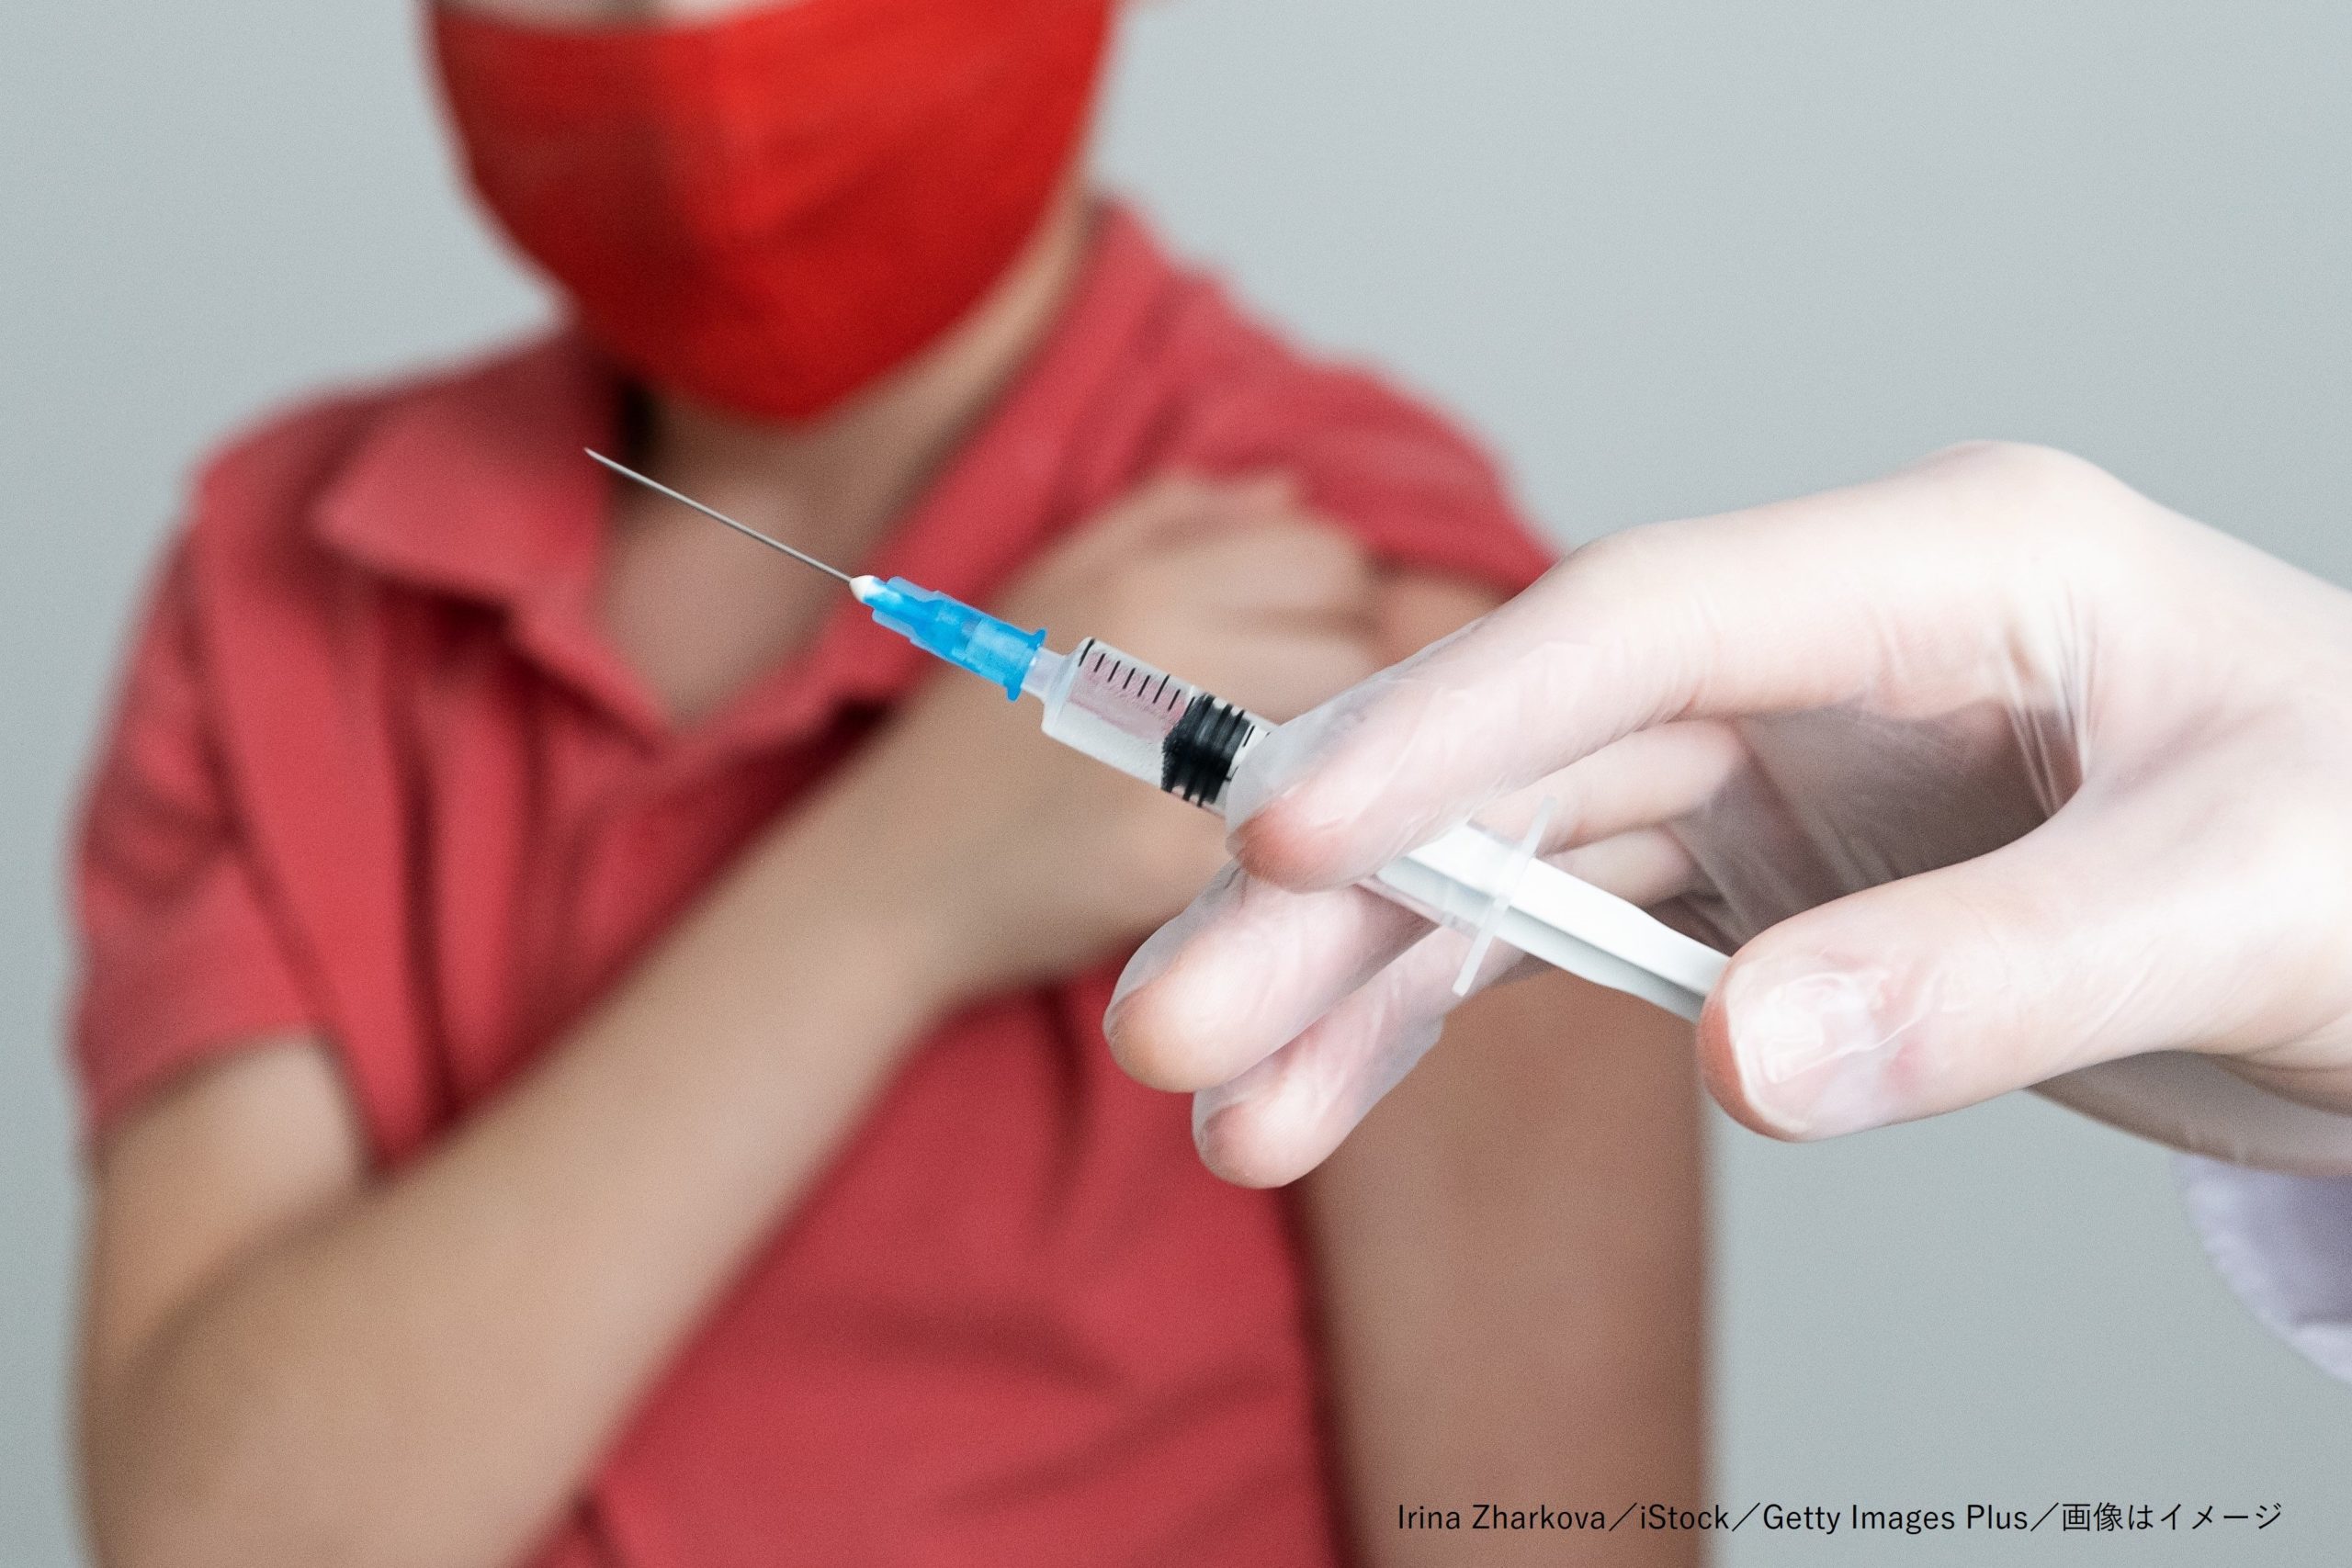 米国で複数の小児に成人用コロナワクチンを誤接種 承認前の見切り発進で Sirabee